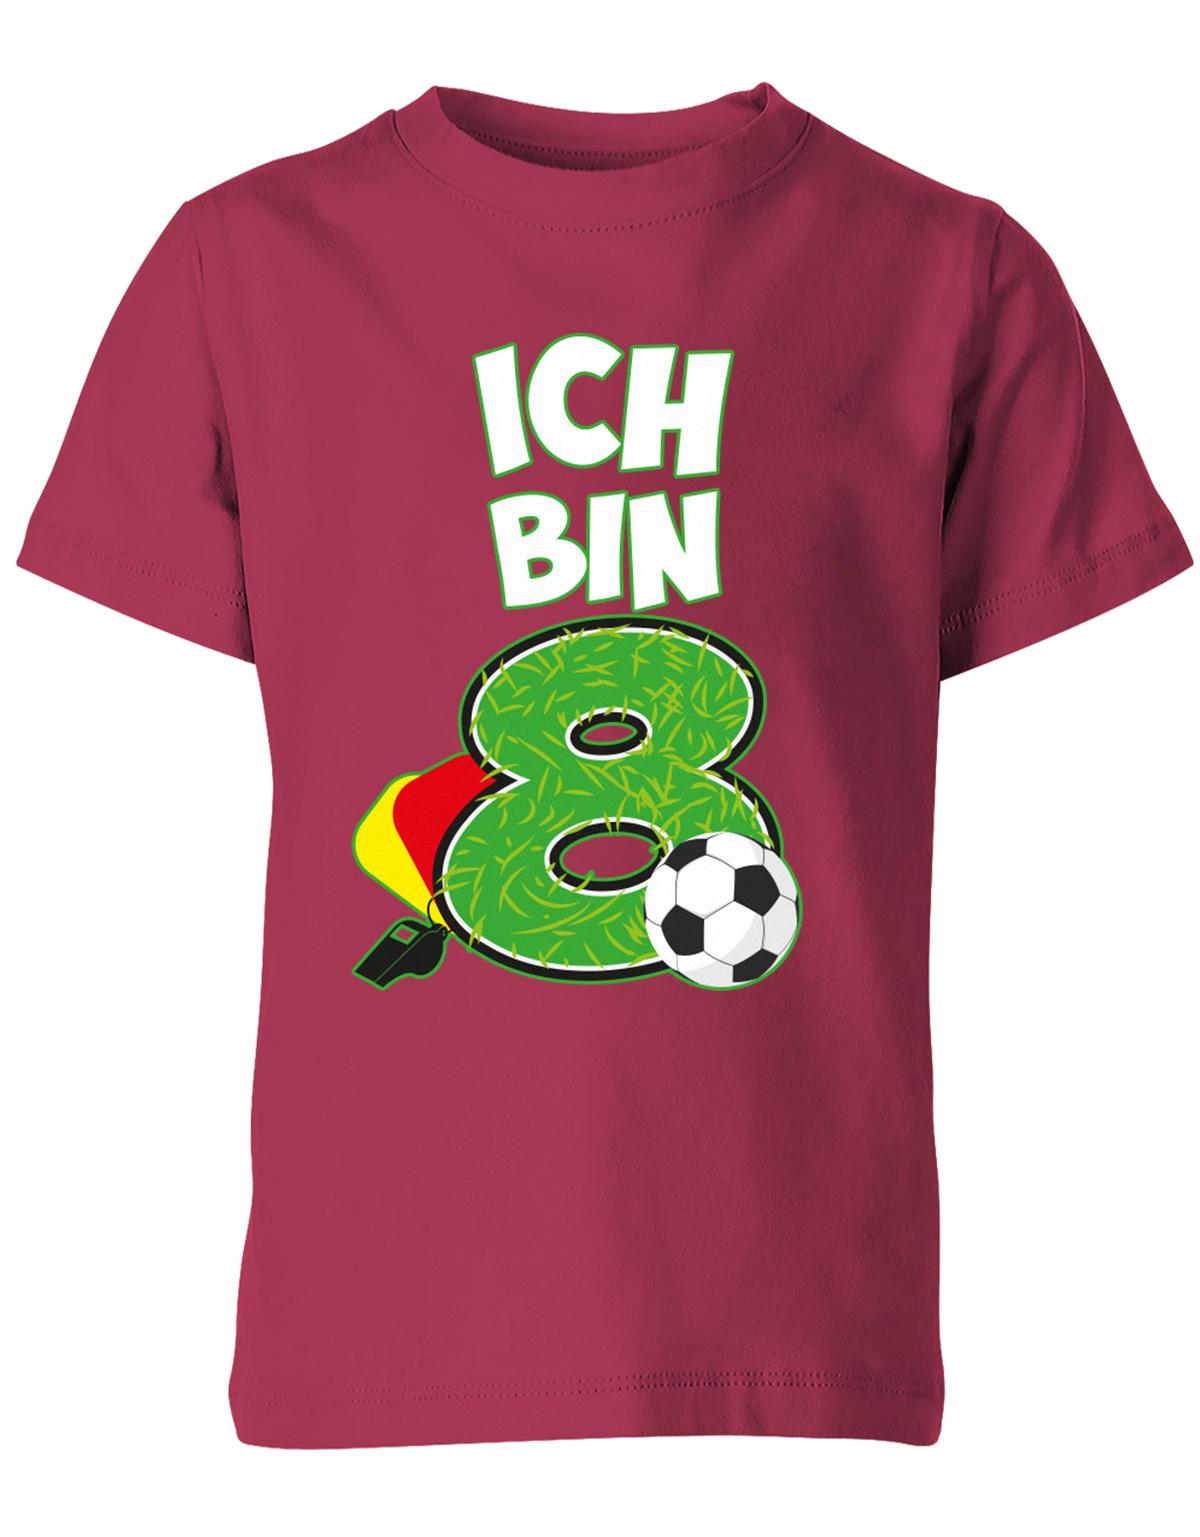 ich-bin-8-fussball-rote-gelbe-karte-geburtstag-fussballer-shirt-kinder-shirt-sorbetdzhCd9sdKWqnR